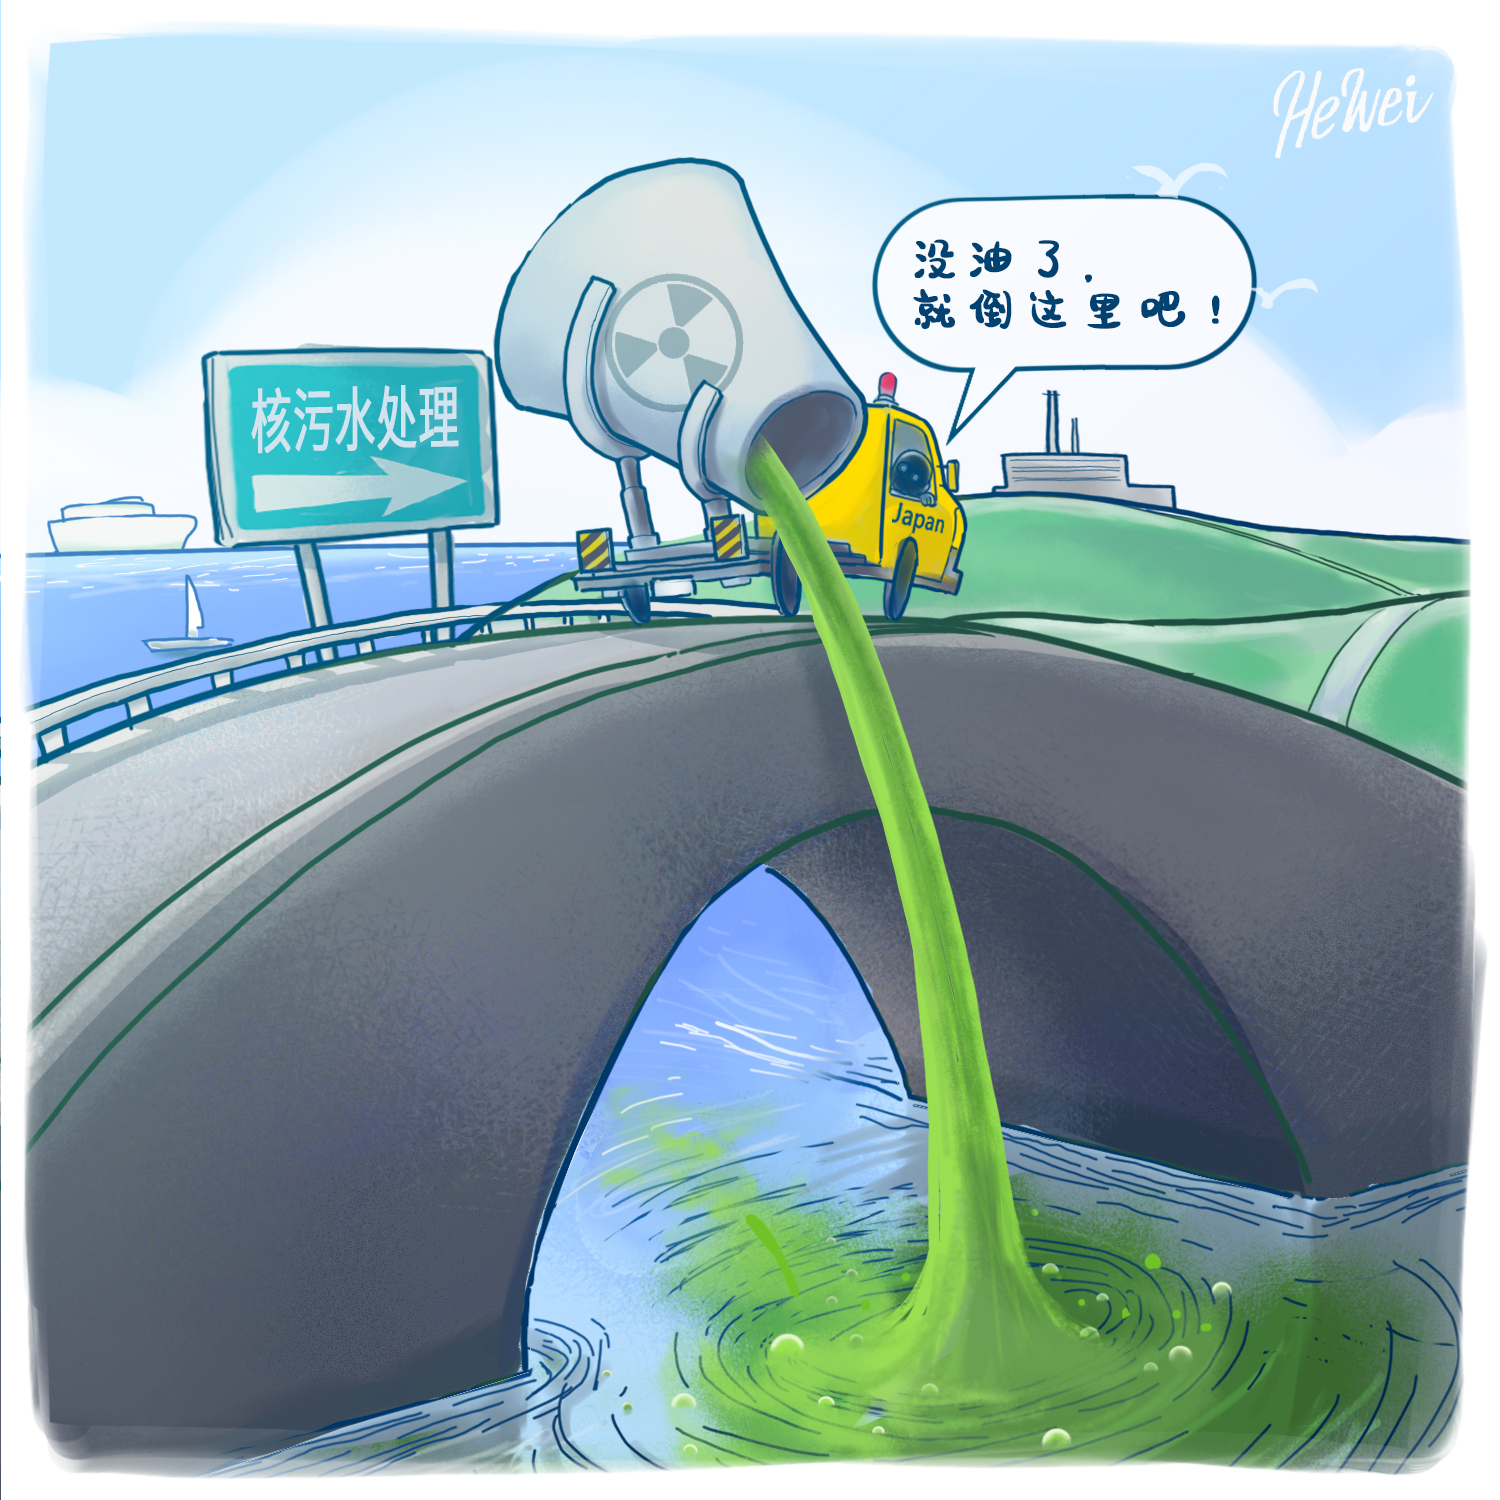 【漫评】强推核污染水排海,日本损人不利己 